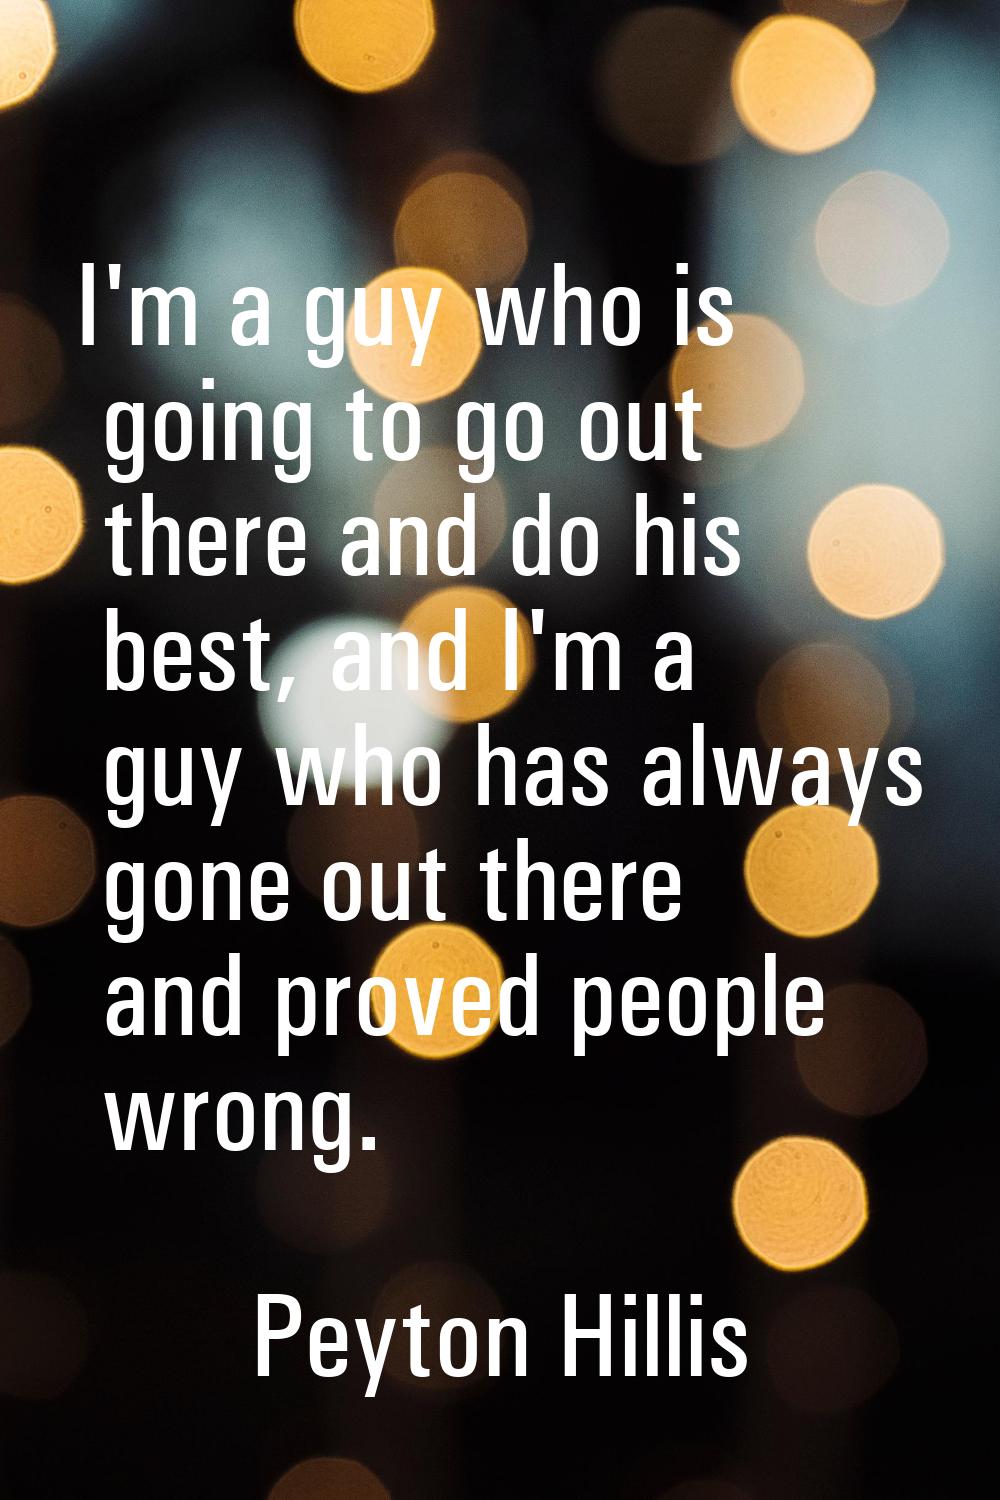 I'm a guy who is going to go out there and do his best, and I'm a guy who has always gone out there